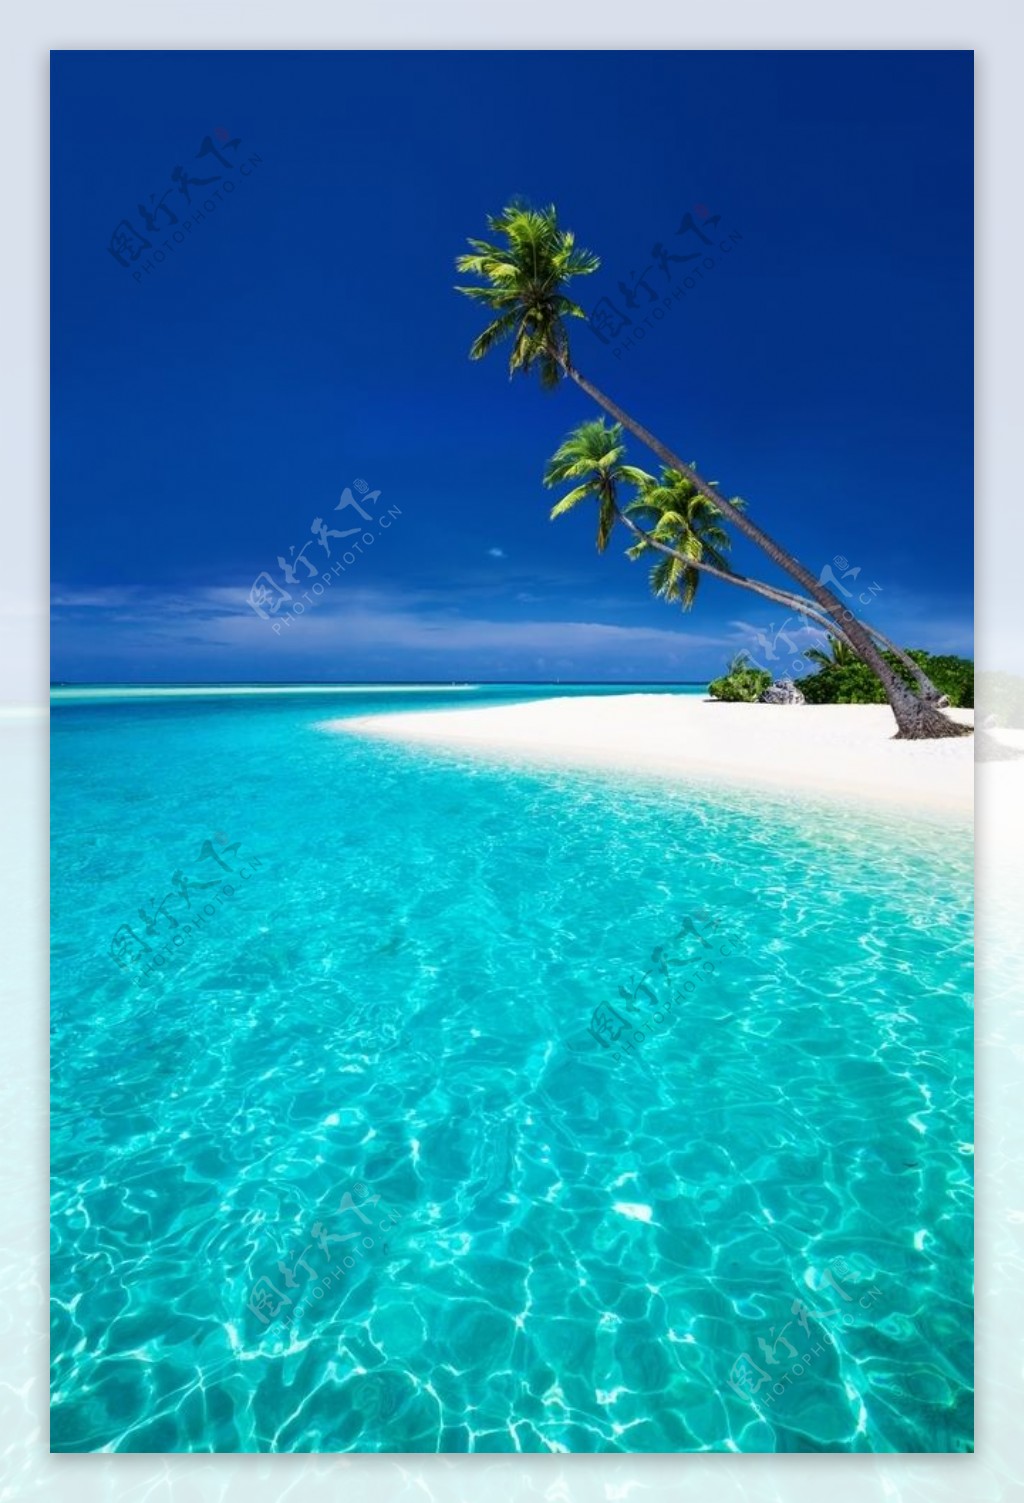 海边椰树沙滩风景图片大全-海边椰树沙滩风景高清图片下载-觅知网